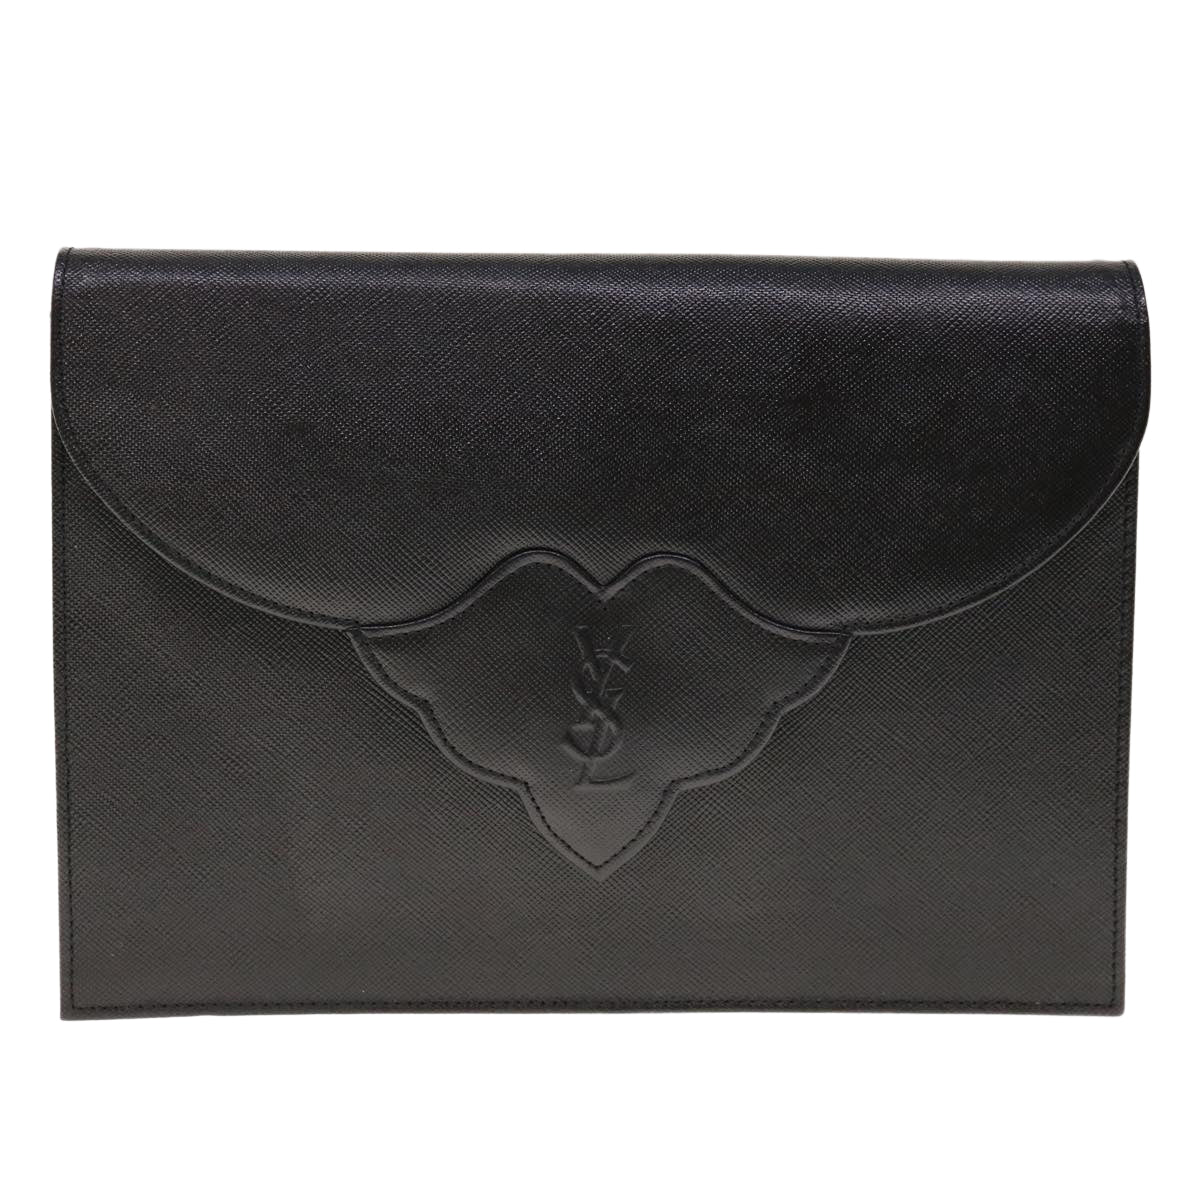 SAINT LAURENT Clutch Bag Leather Black Auth yk10525 - 0